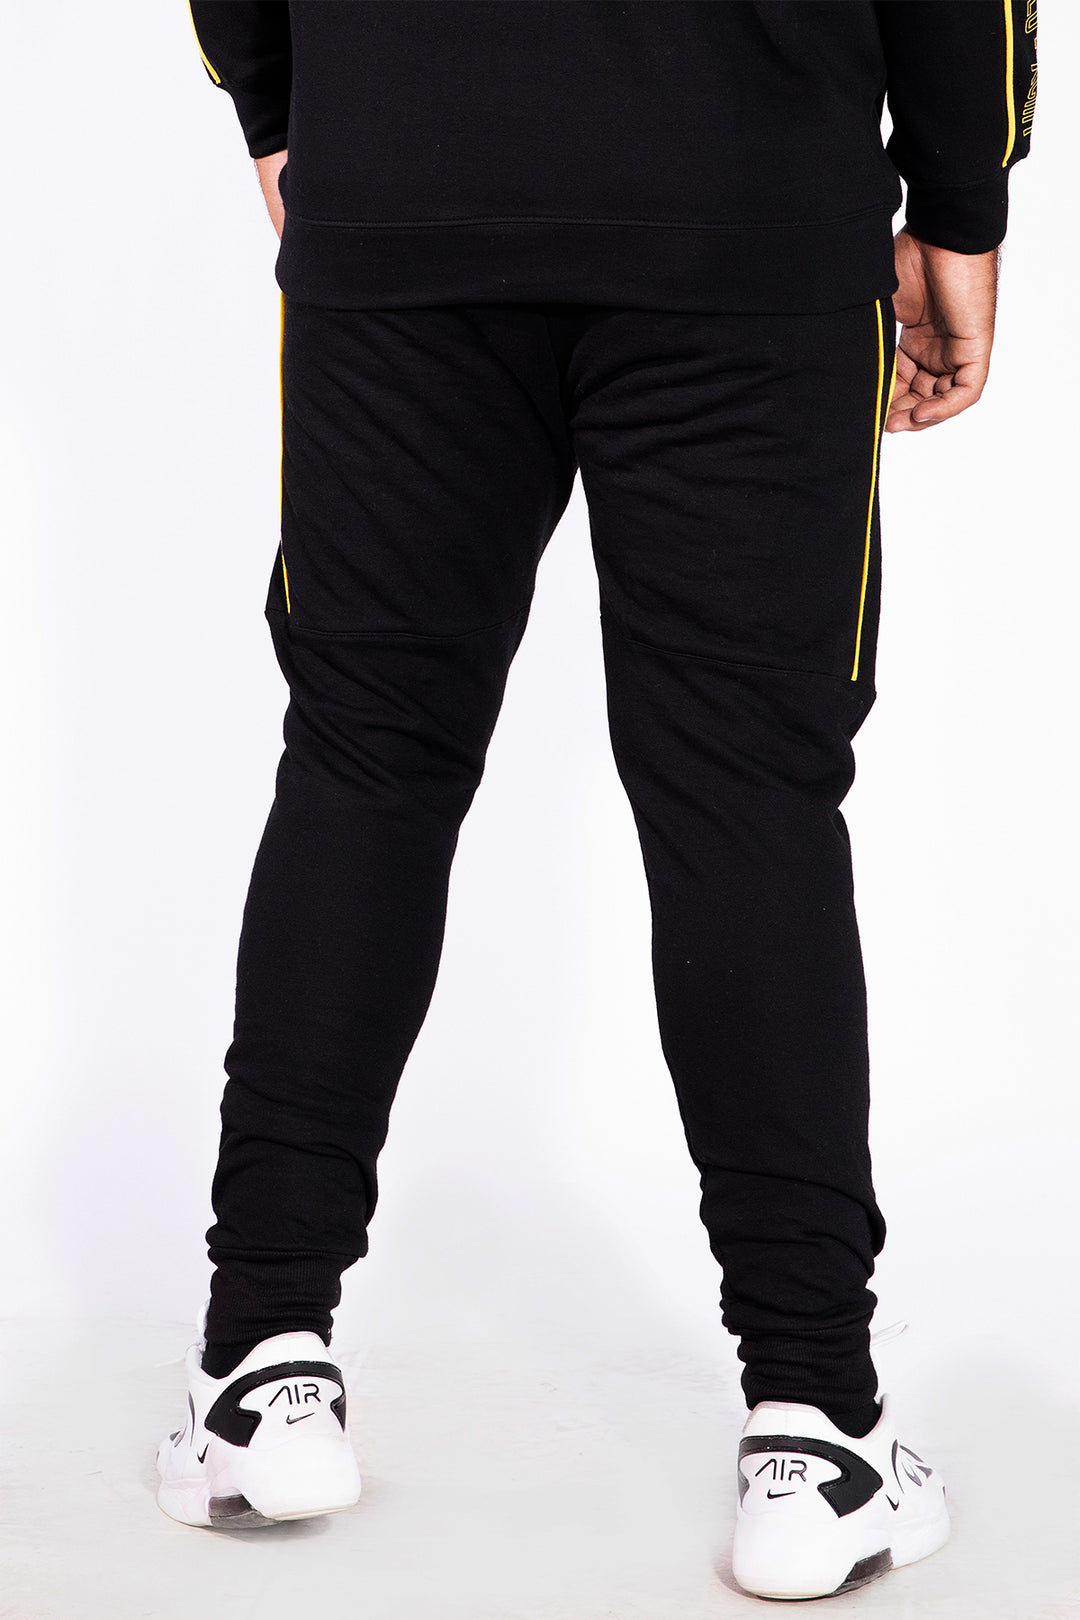 Liminal Black Jog Pants (Plus Size)  - W21 - MTR026P